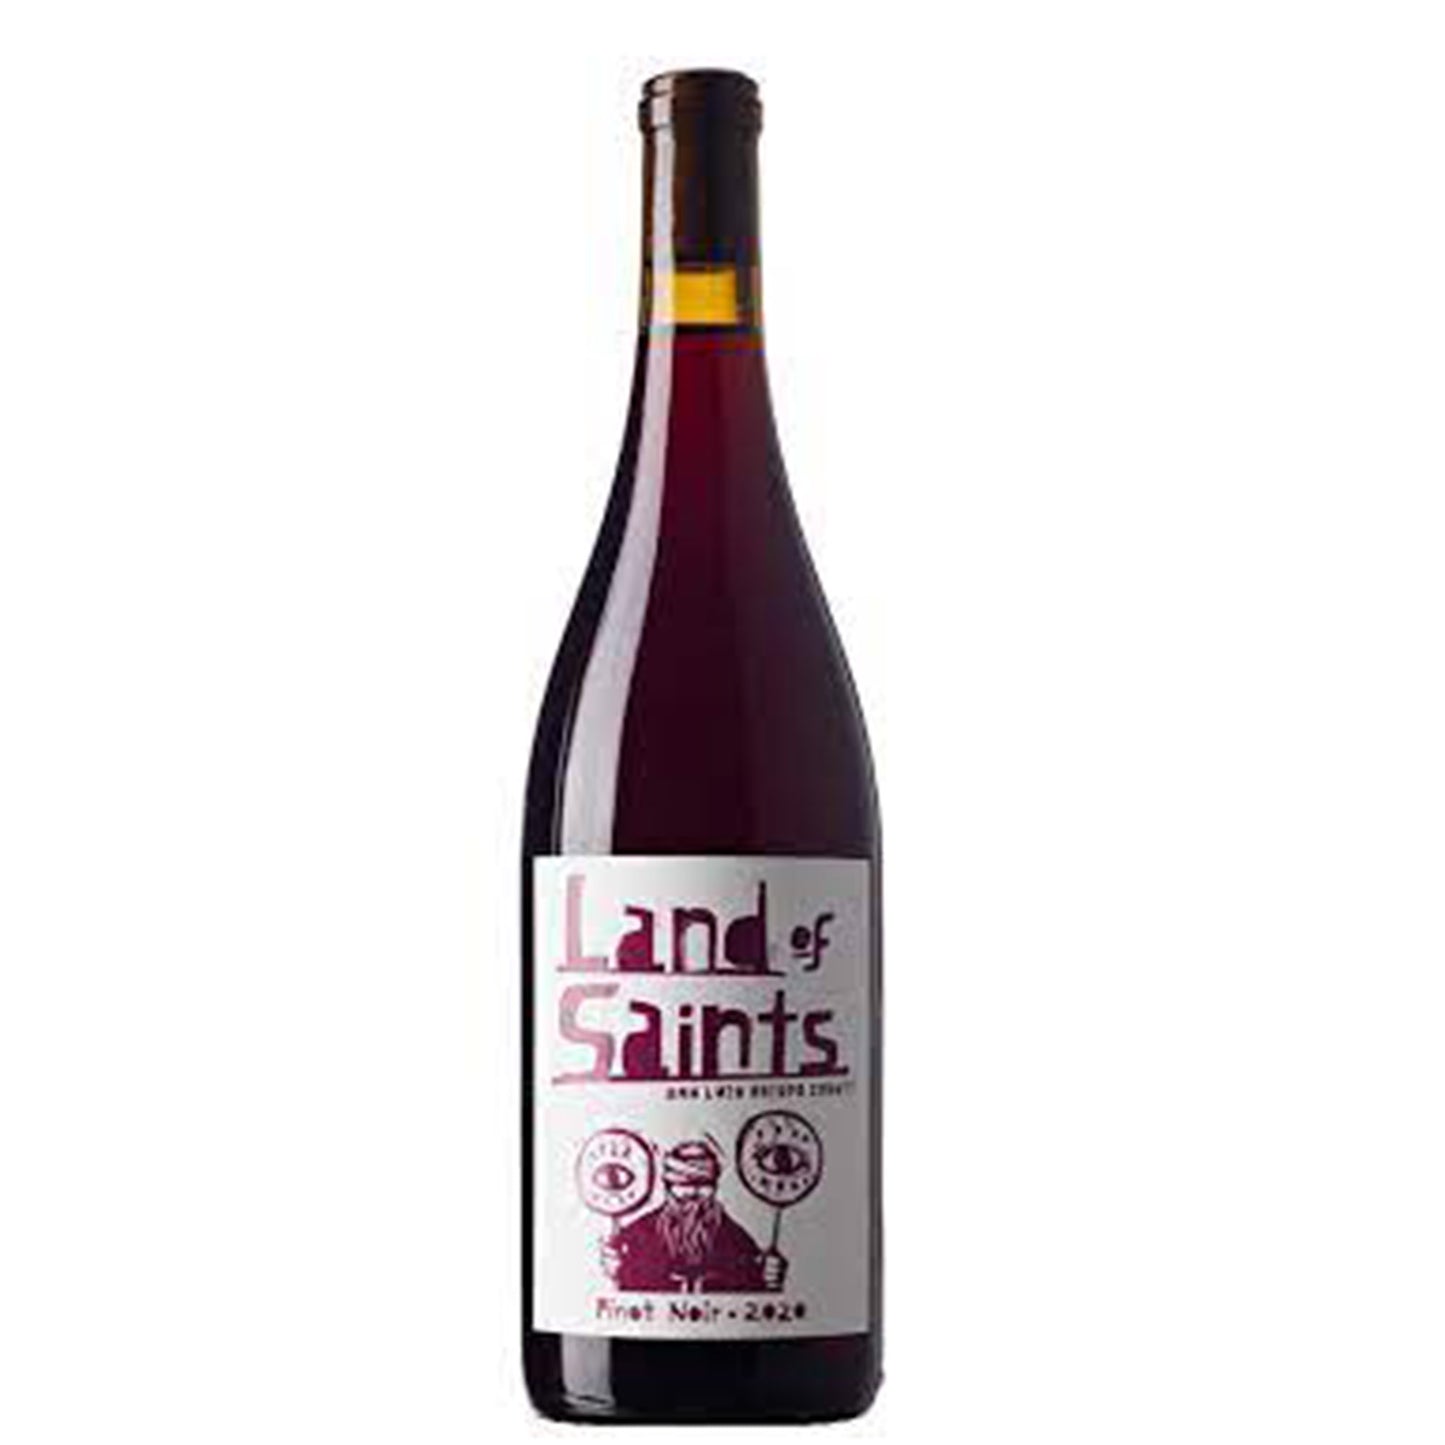 Land of Saints Pinot Noir, San Luis Obispo 2021 (750 ml)